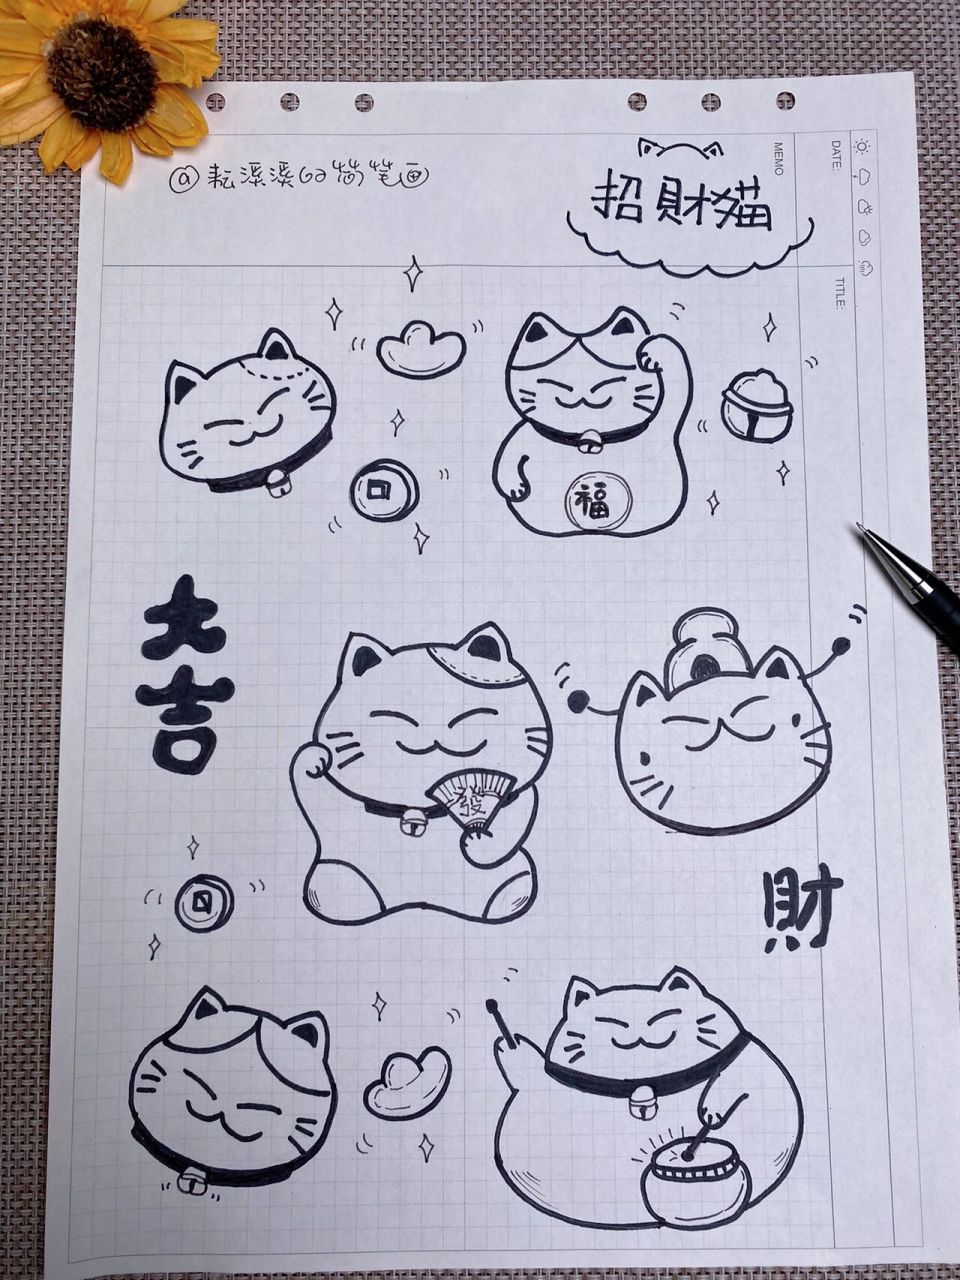 招财猫简笔画画法图片